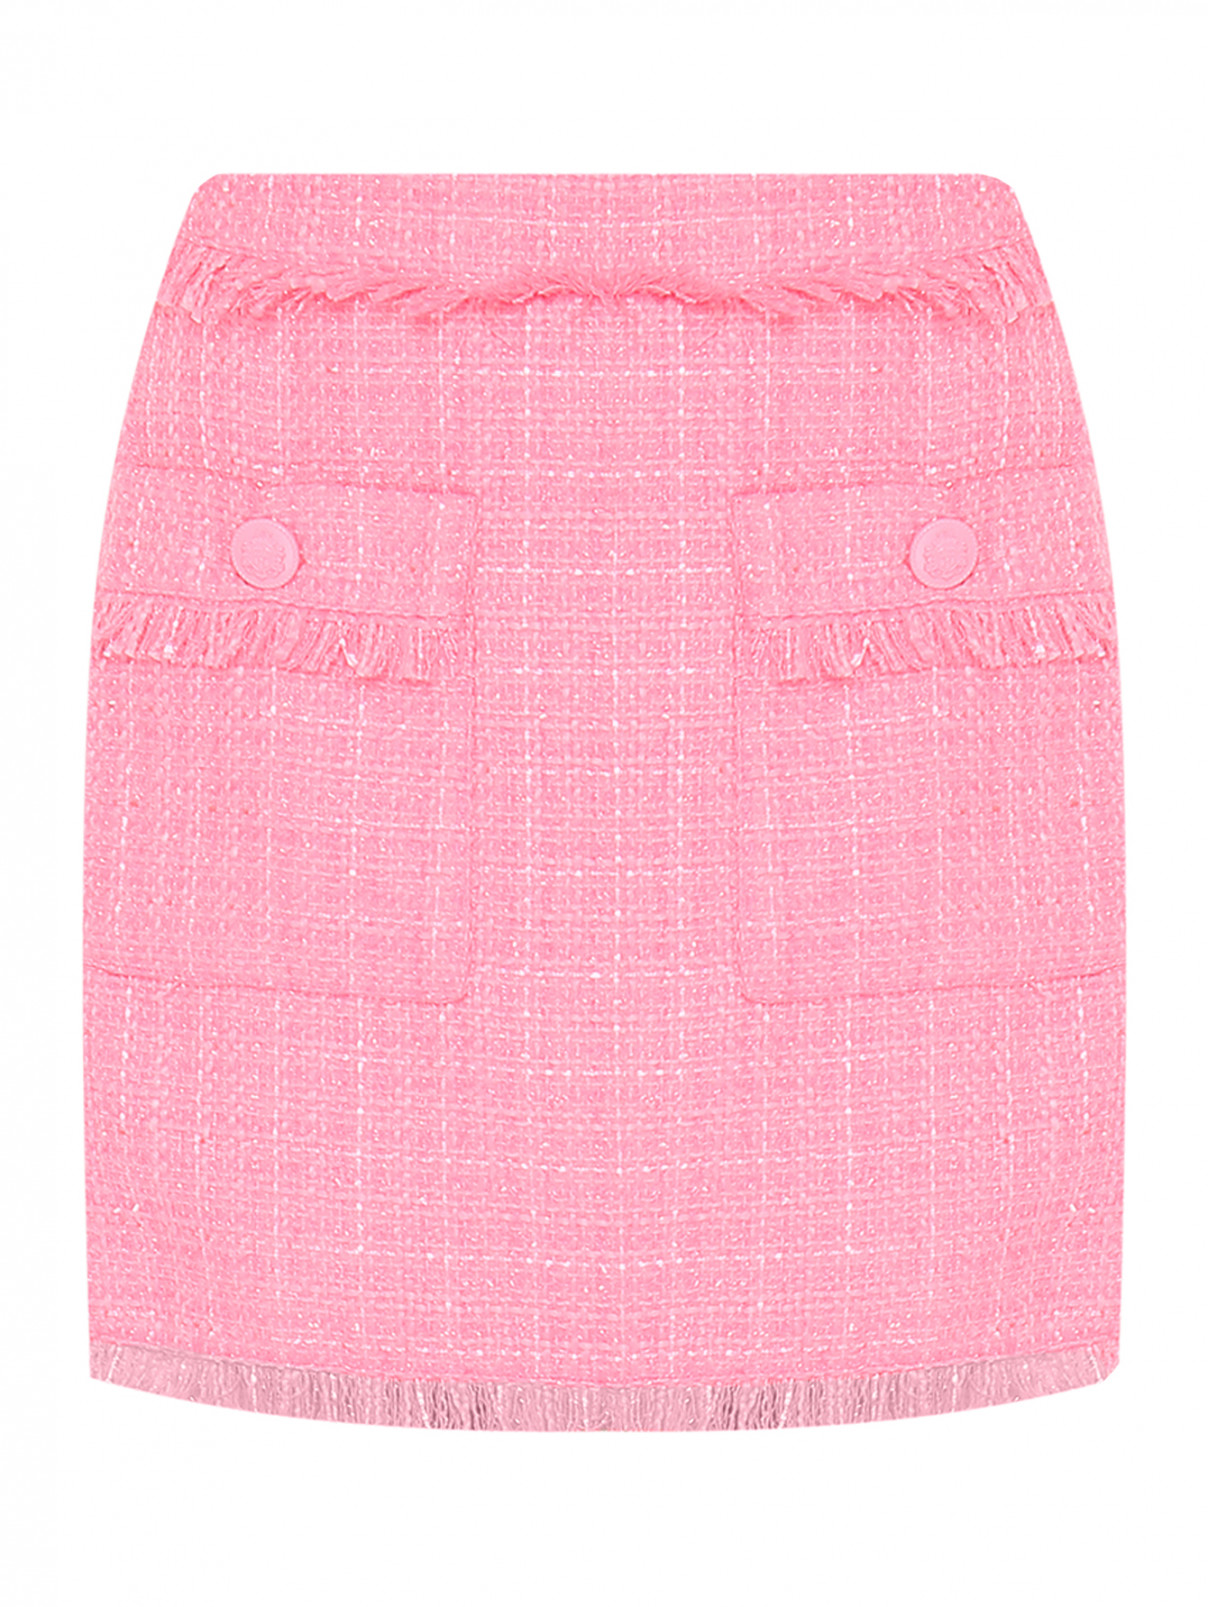 Юбка с накладными карманами Essentiel Antwerp  –  Общий вид  – Цвет:  Розовый